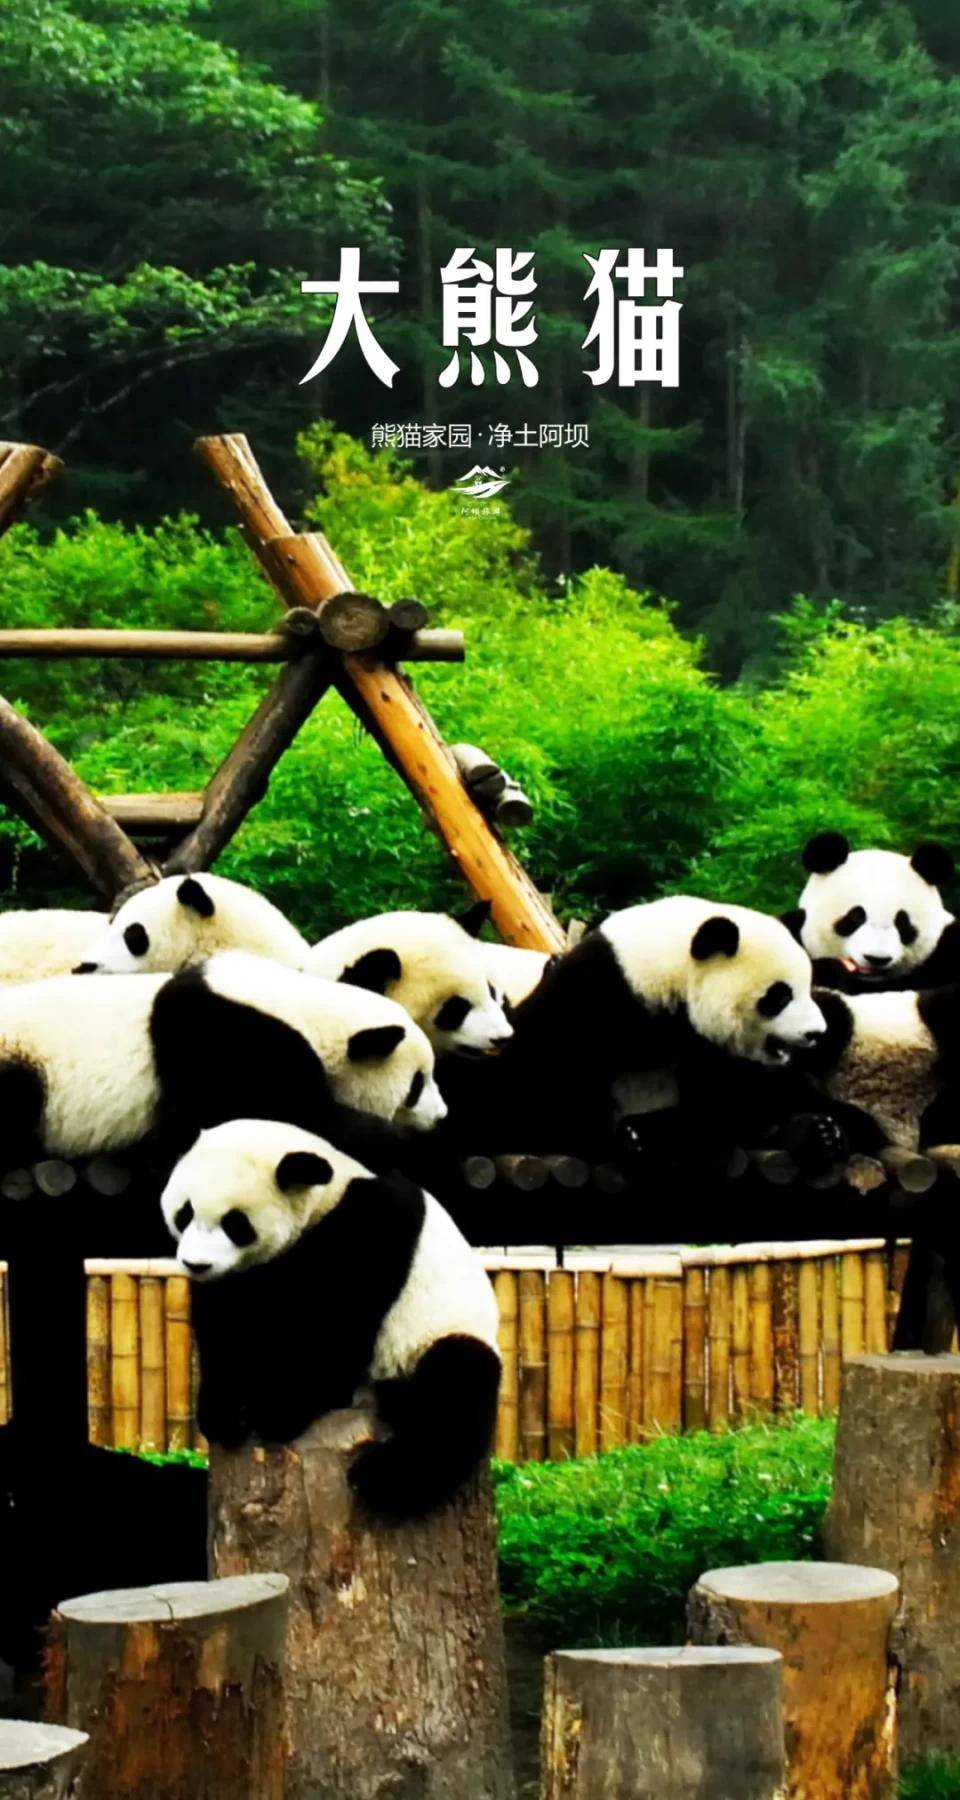 喜迎2021，“熊猫家园·净土阿坝”祝您新年快乐！